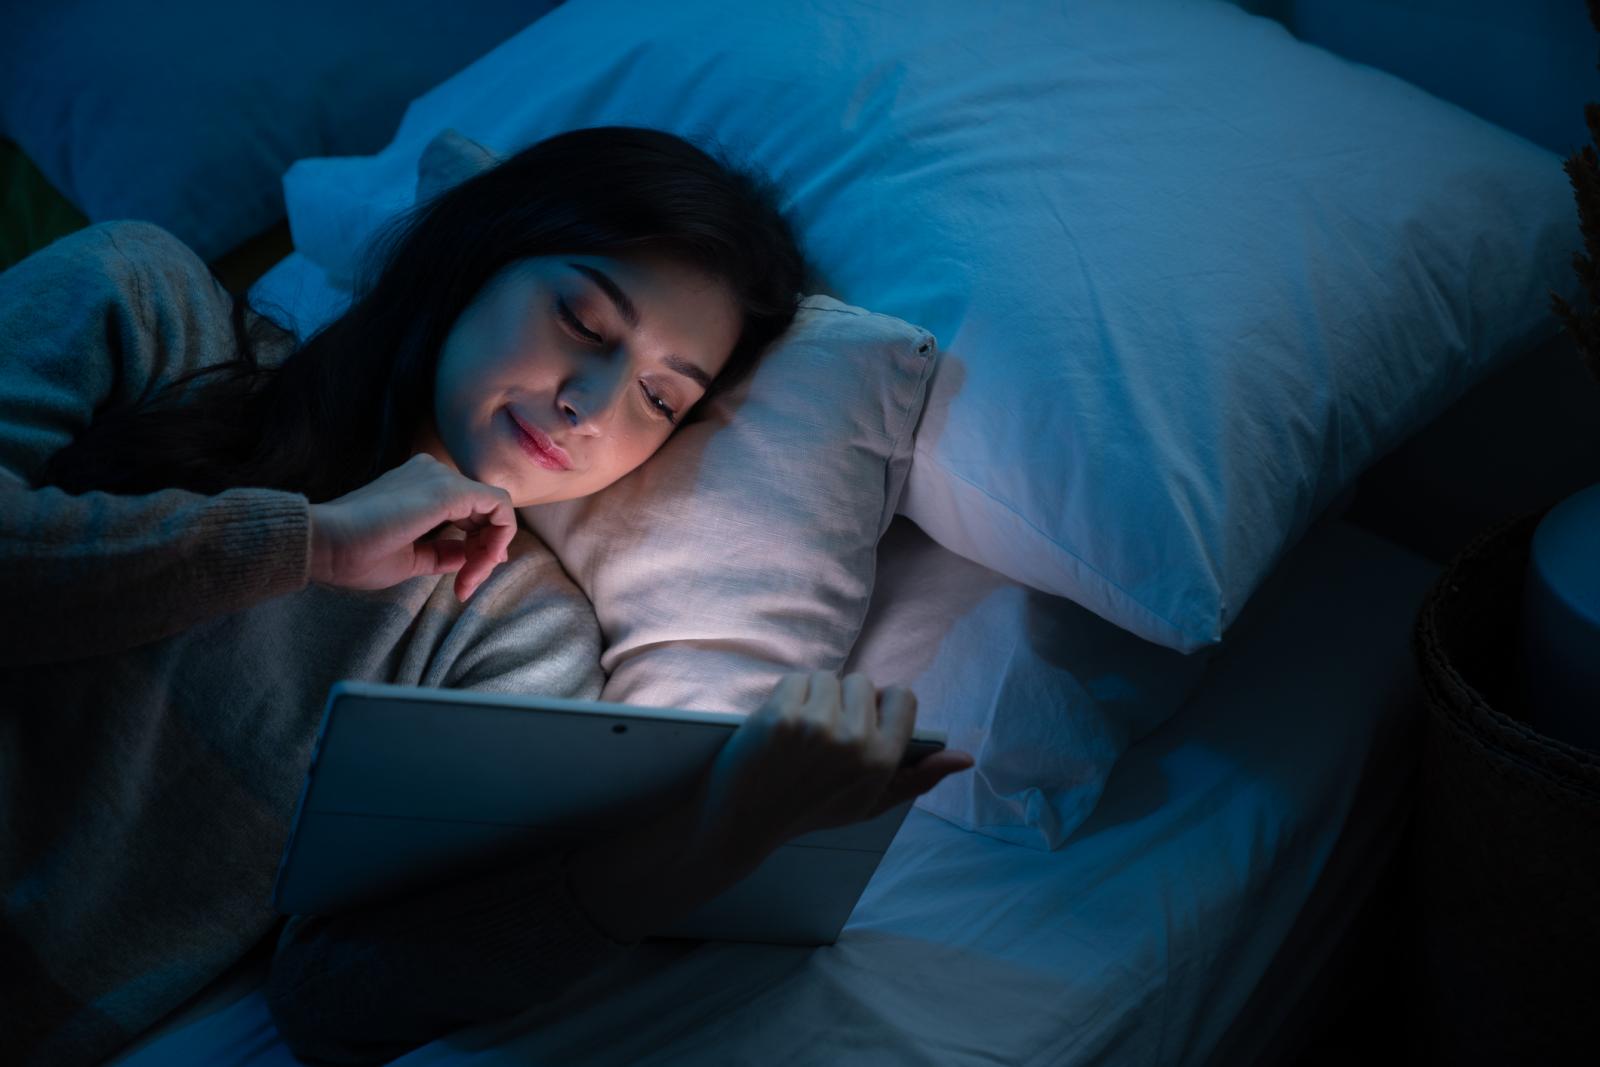 women using smartphone in bed